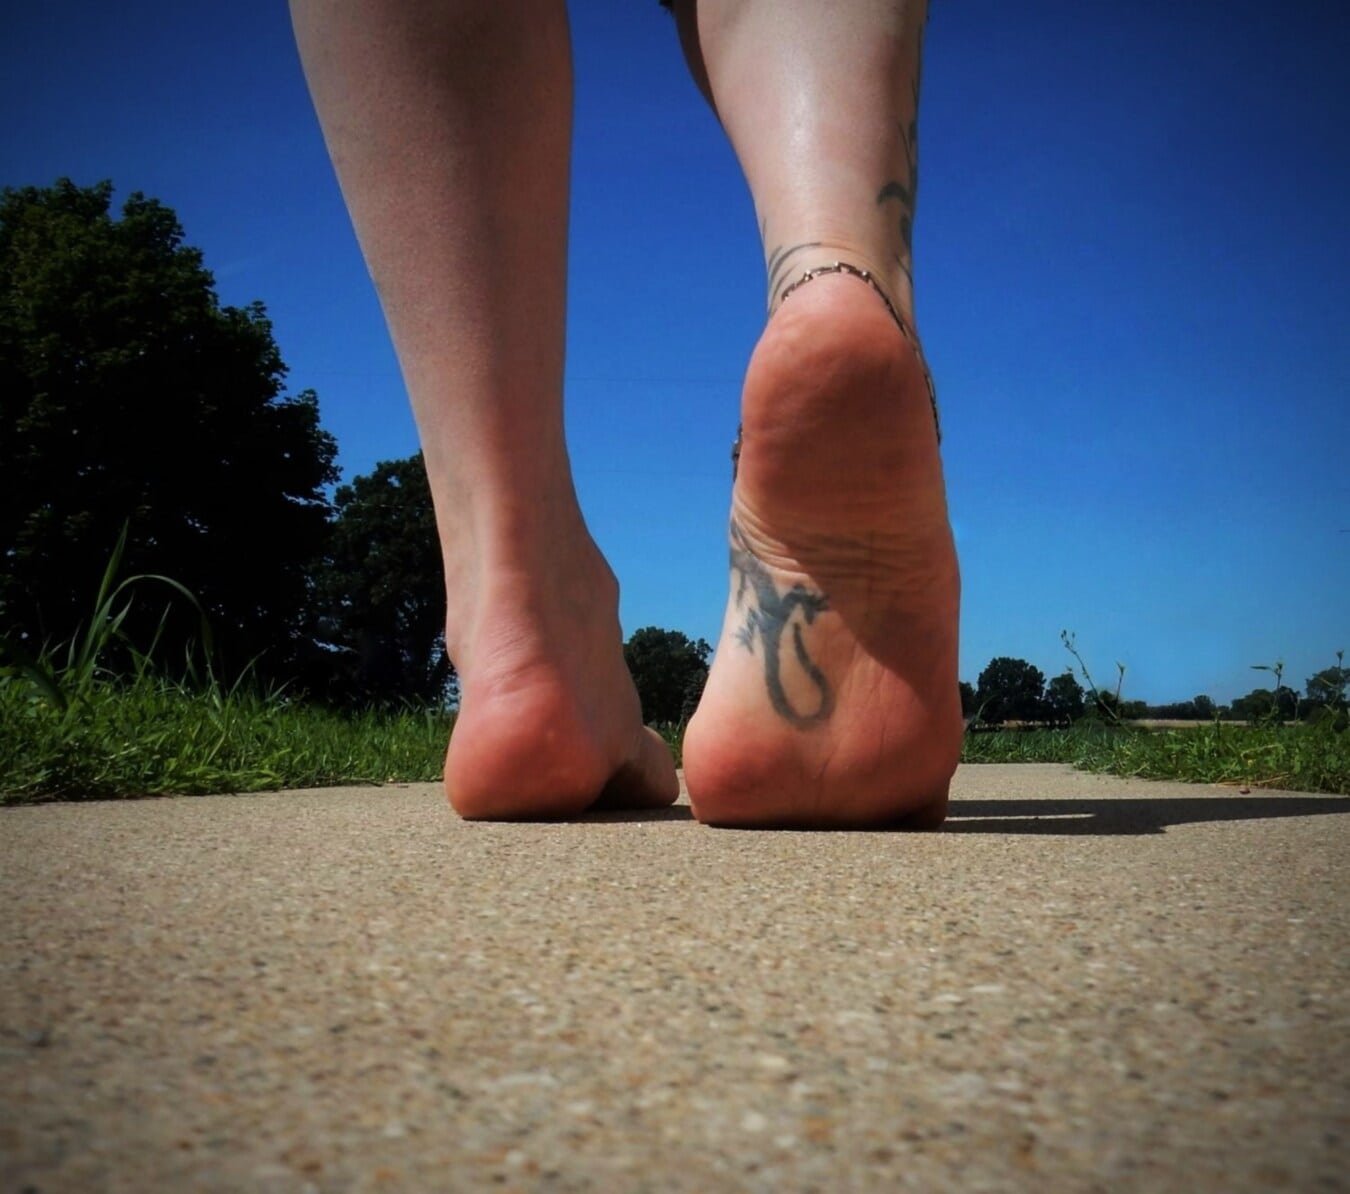 tattoo, lizard, feet, barefoot, walking, asphalt, foot, walk, legs, close-up